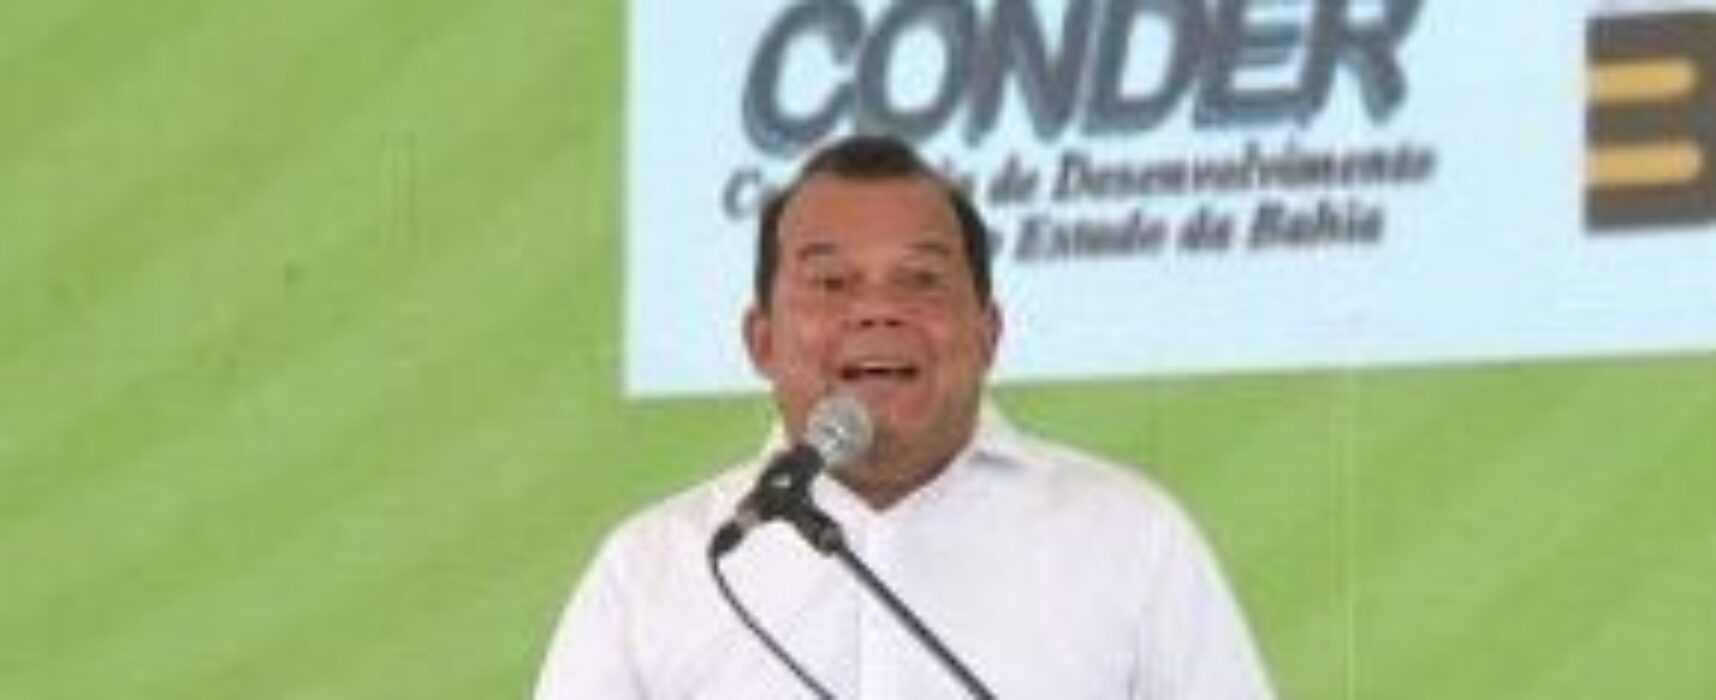 “Salvador precisa deixar de ter um gerente para ter prefeito”, afirma Geraldo Jr